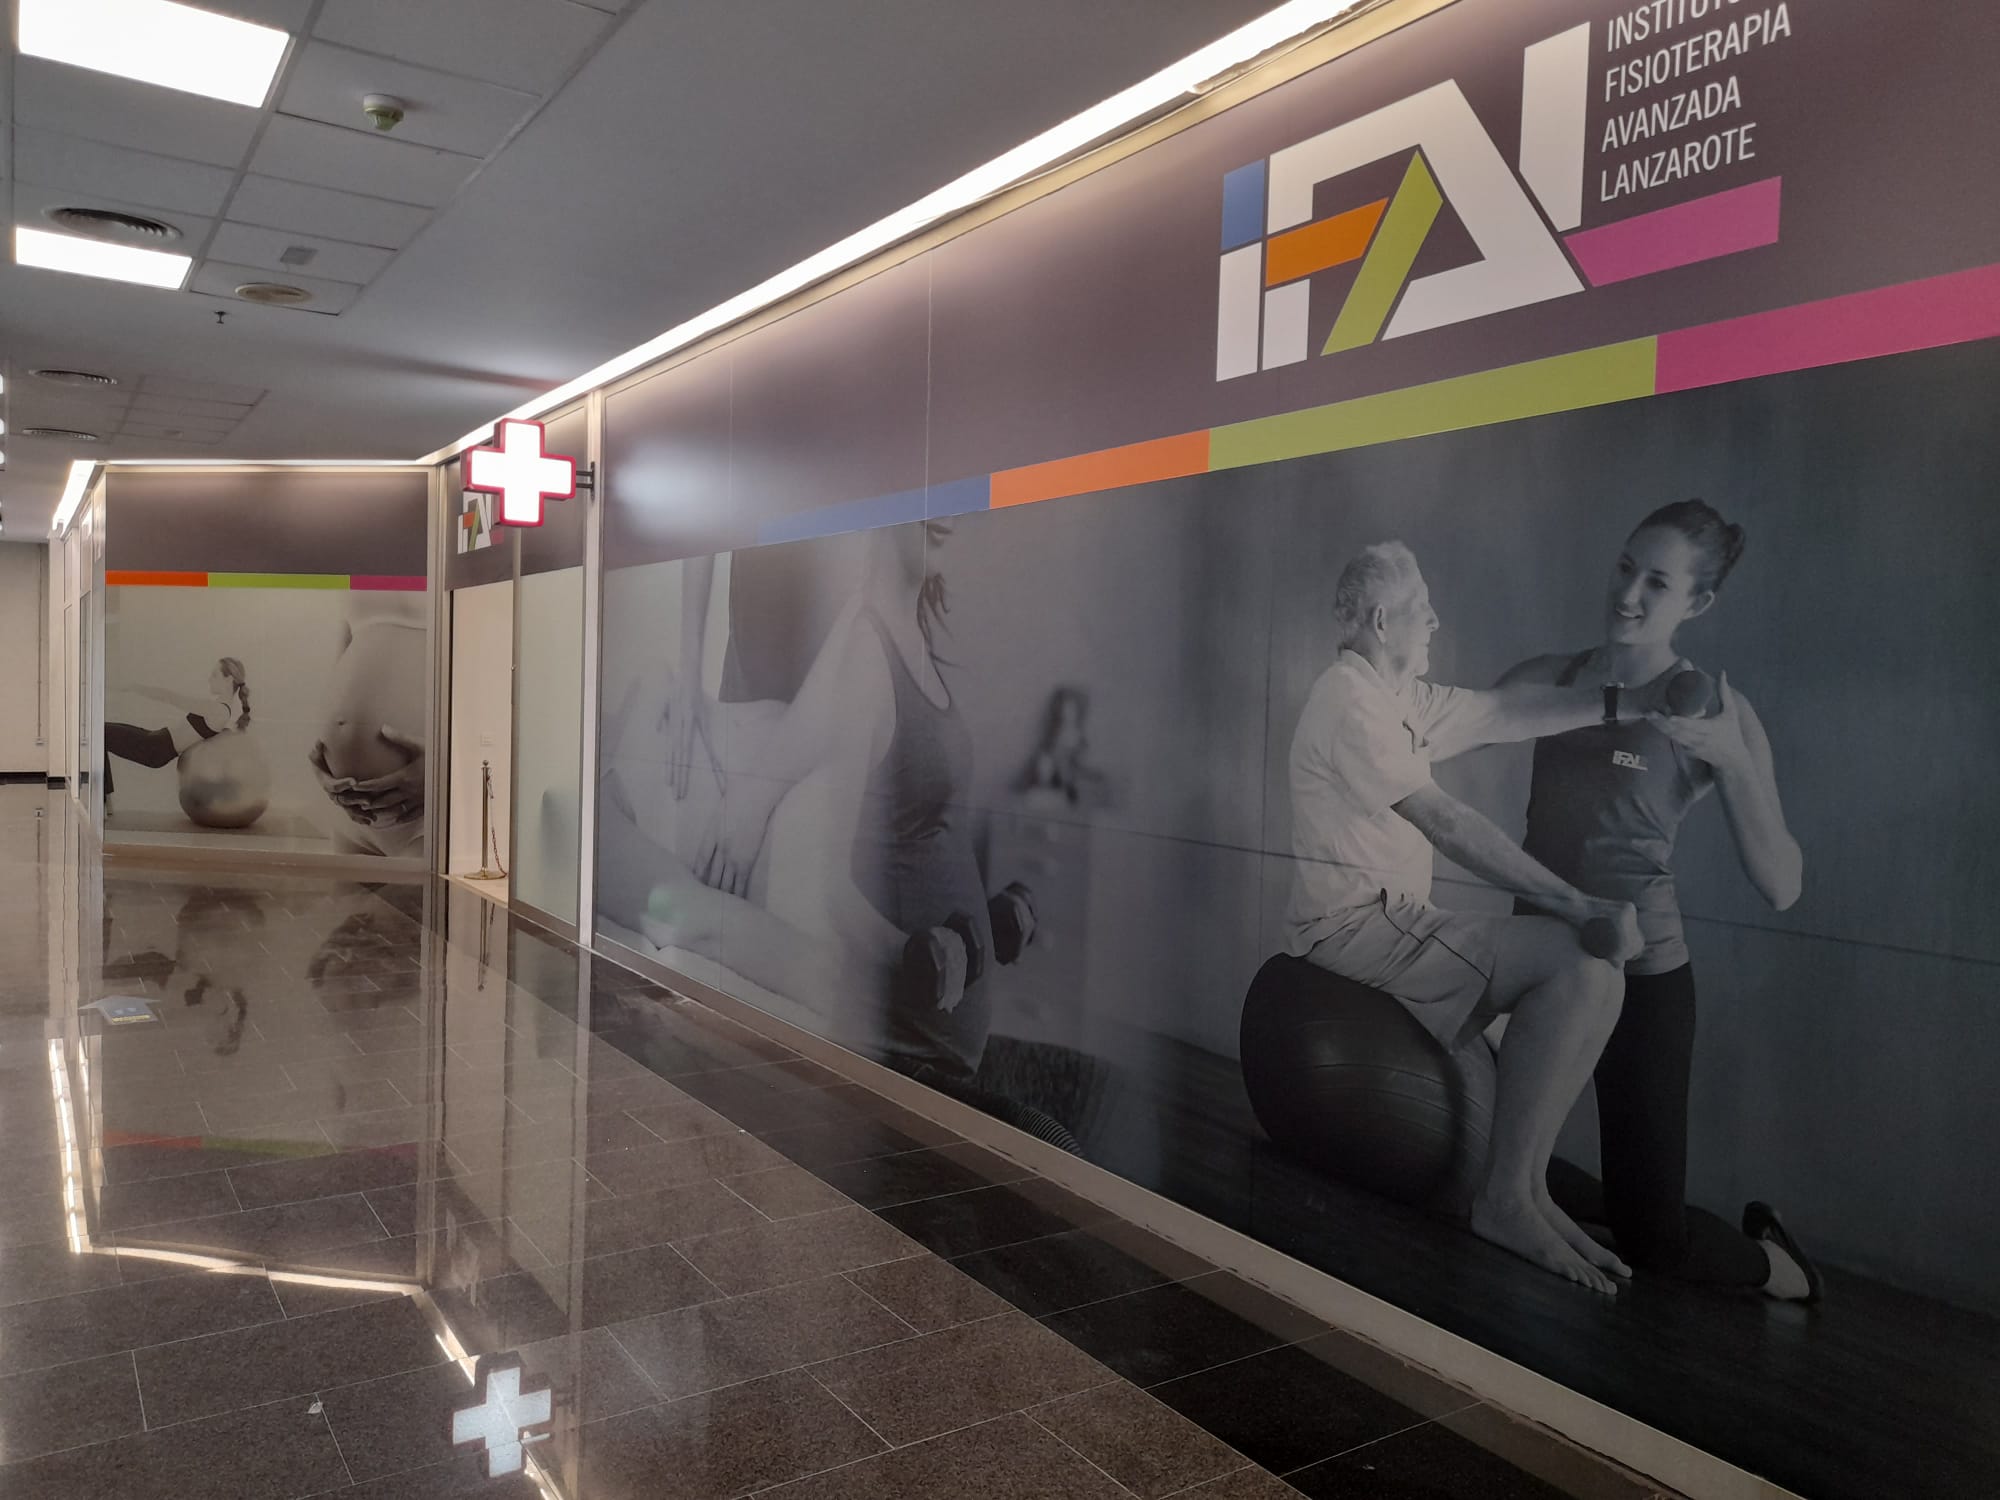 Instituto de Fisioterapia Avanzada de Lanzarote